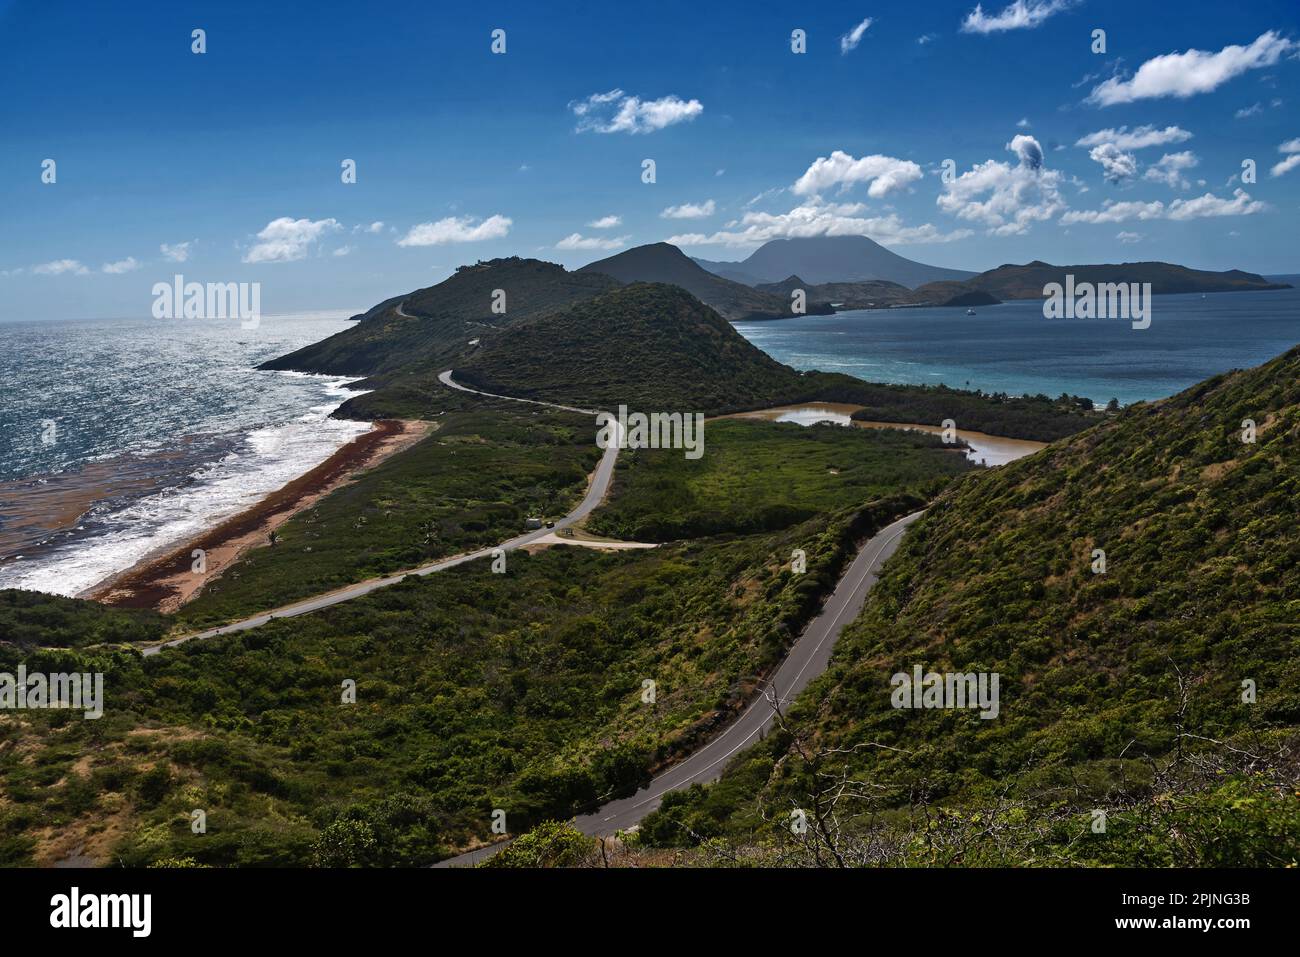 Saint-Kitts, Antilles, la partie ouest de l'île borde la mer des Caraïbes, et la côte est fait face à l'océan Atlantique. Banque D'Images